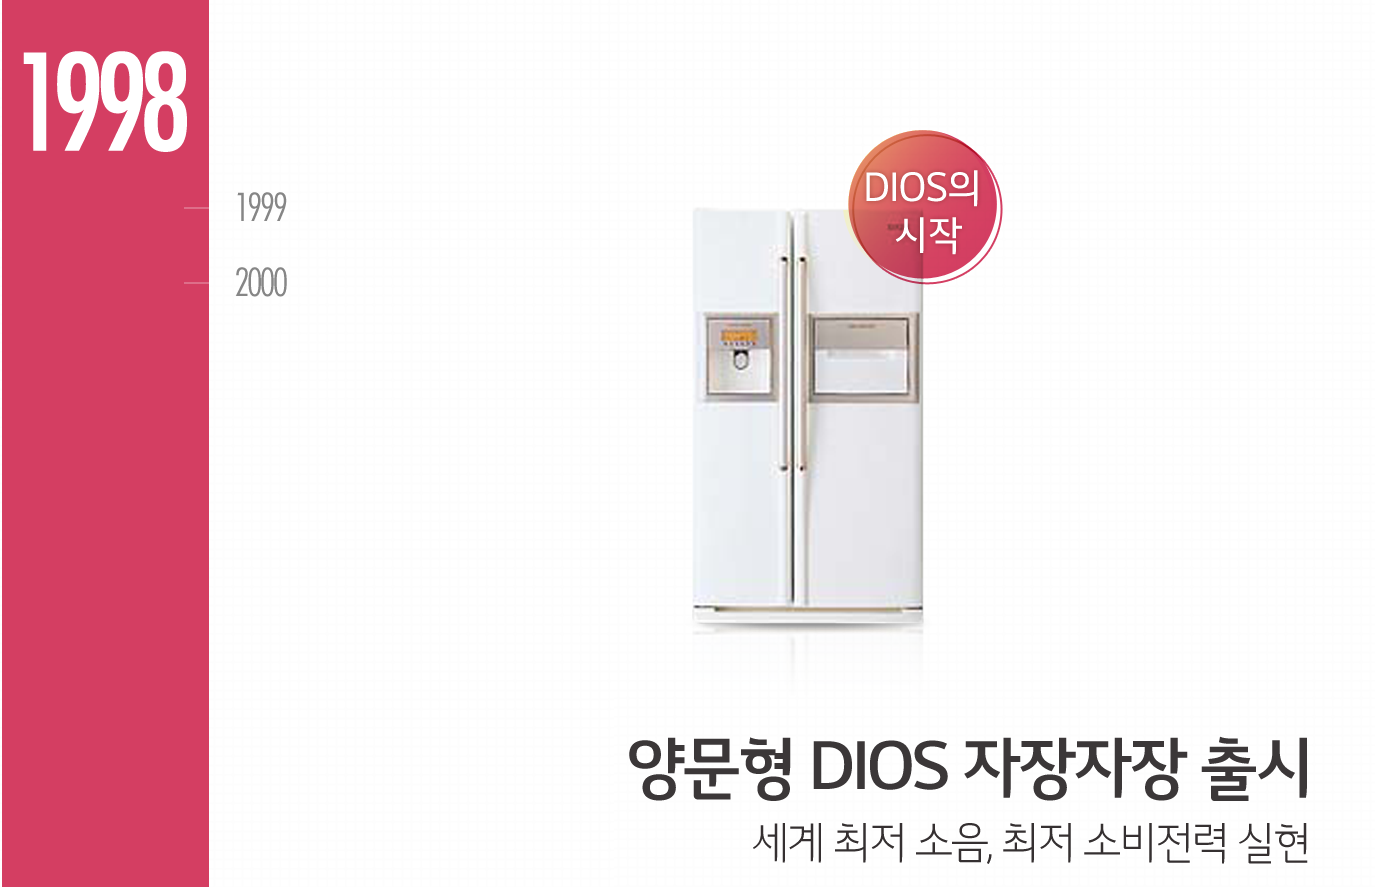 1998년, 프리미엄 냉장고 브랜드 'DIOS'의 시작